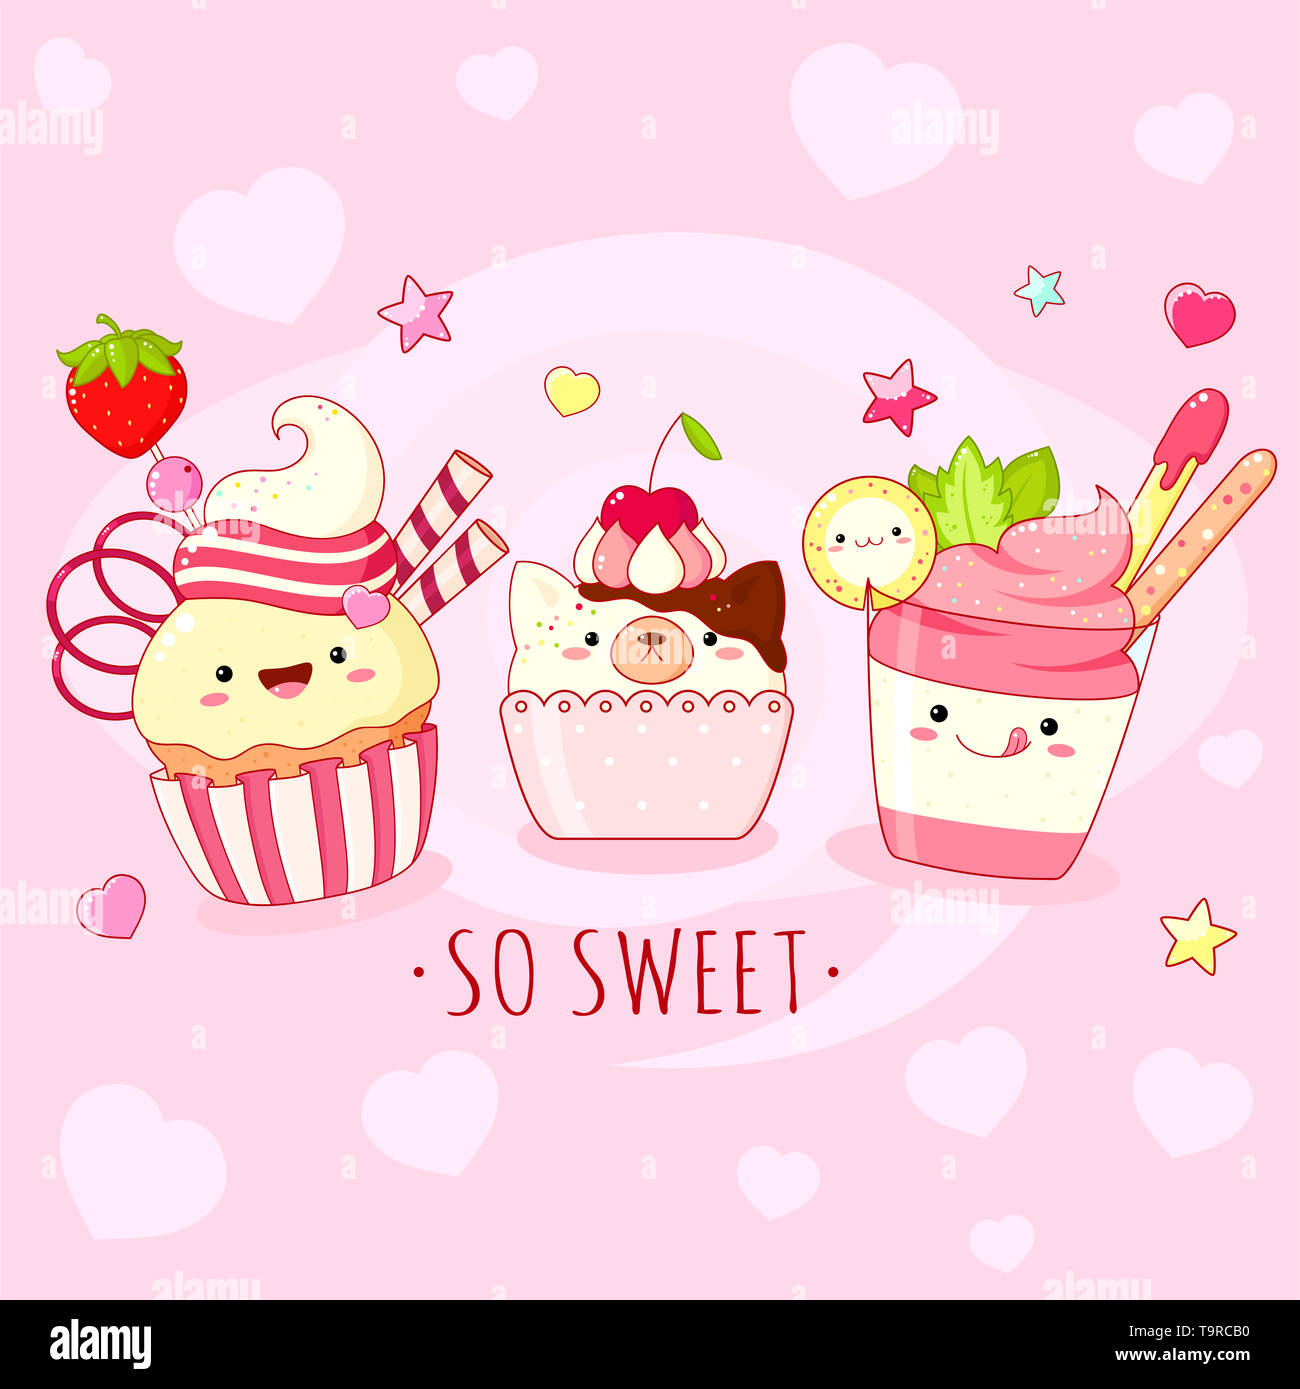 Fond doux mignon drôle avec icônes de style kawaii avec sourire et joues roses. Inscription si doux, smoothies et cupcake. Spe8 Banque D'Images